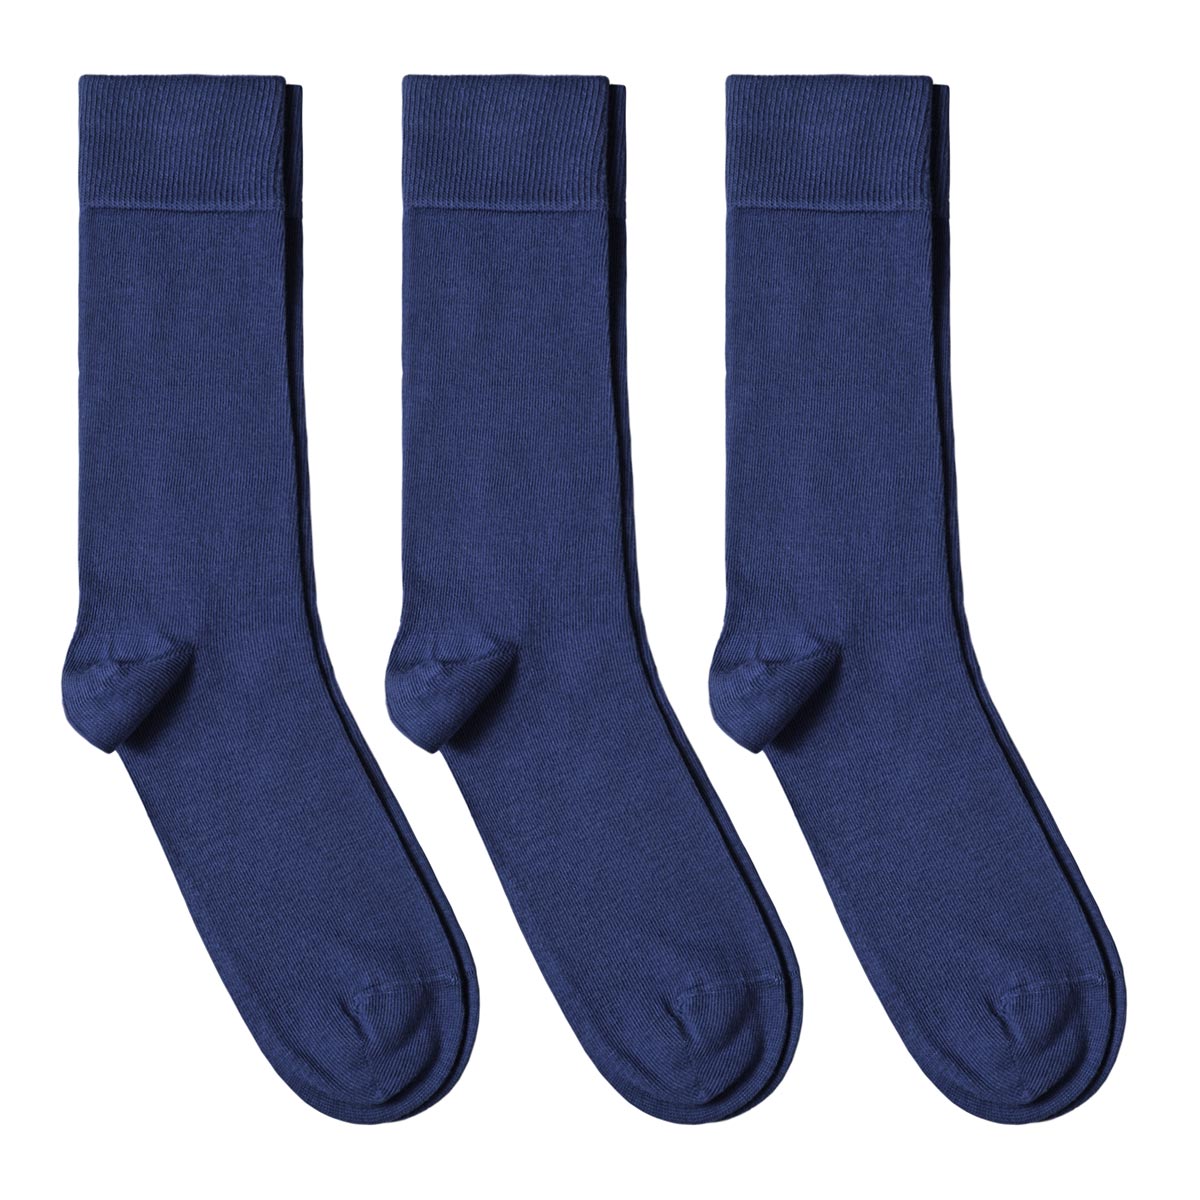 CH-00578_A12-1--_Lot-3-paires-de-chaussettes-homme-bleues-petroles-unies